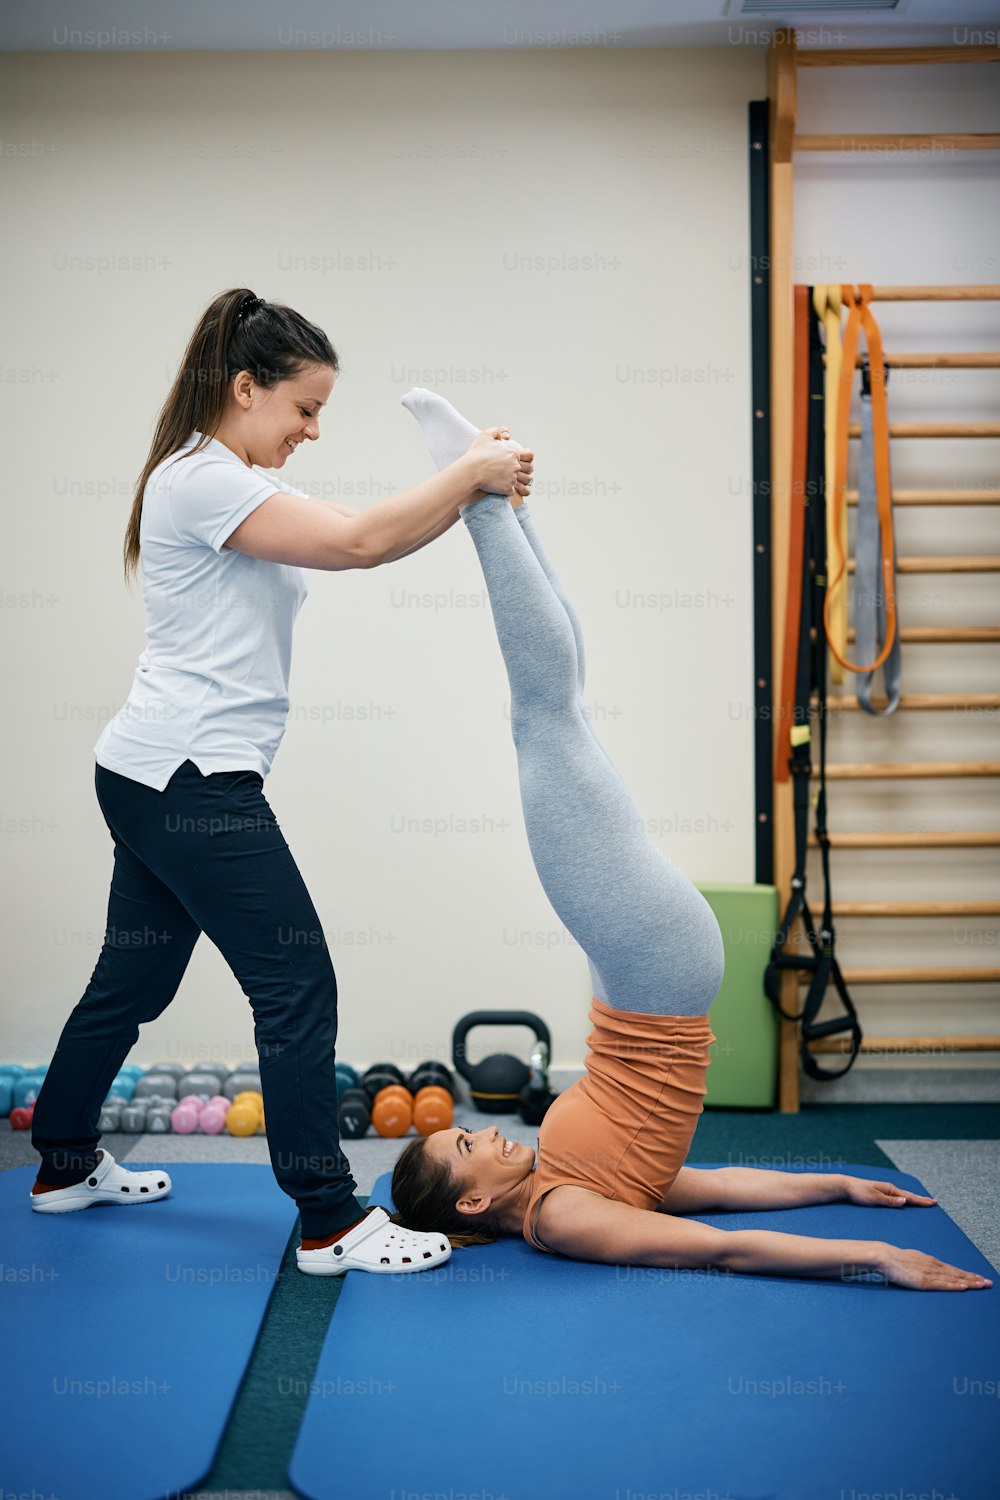 Fisioterapeuta feliz auxiliando a jovem com exercício de ombro durante o tratamento fisioterapêutico no health club.